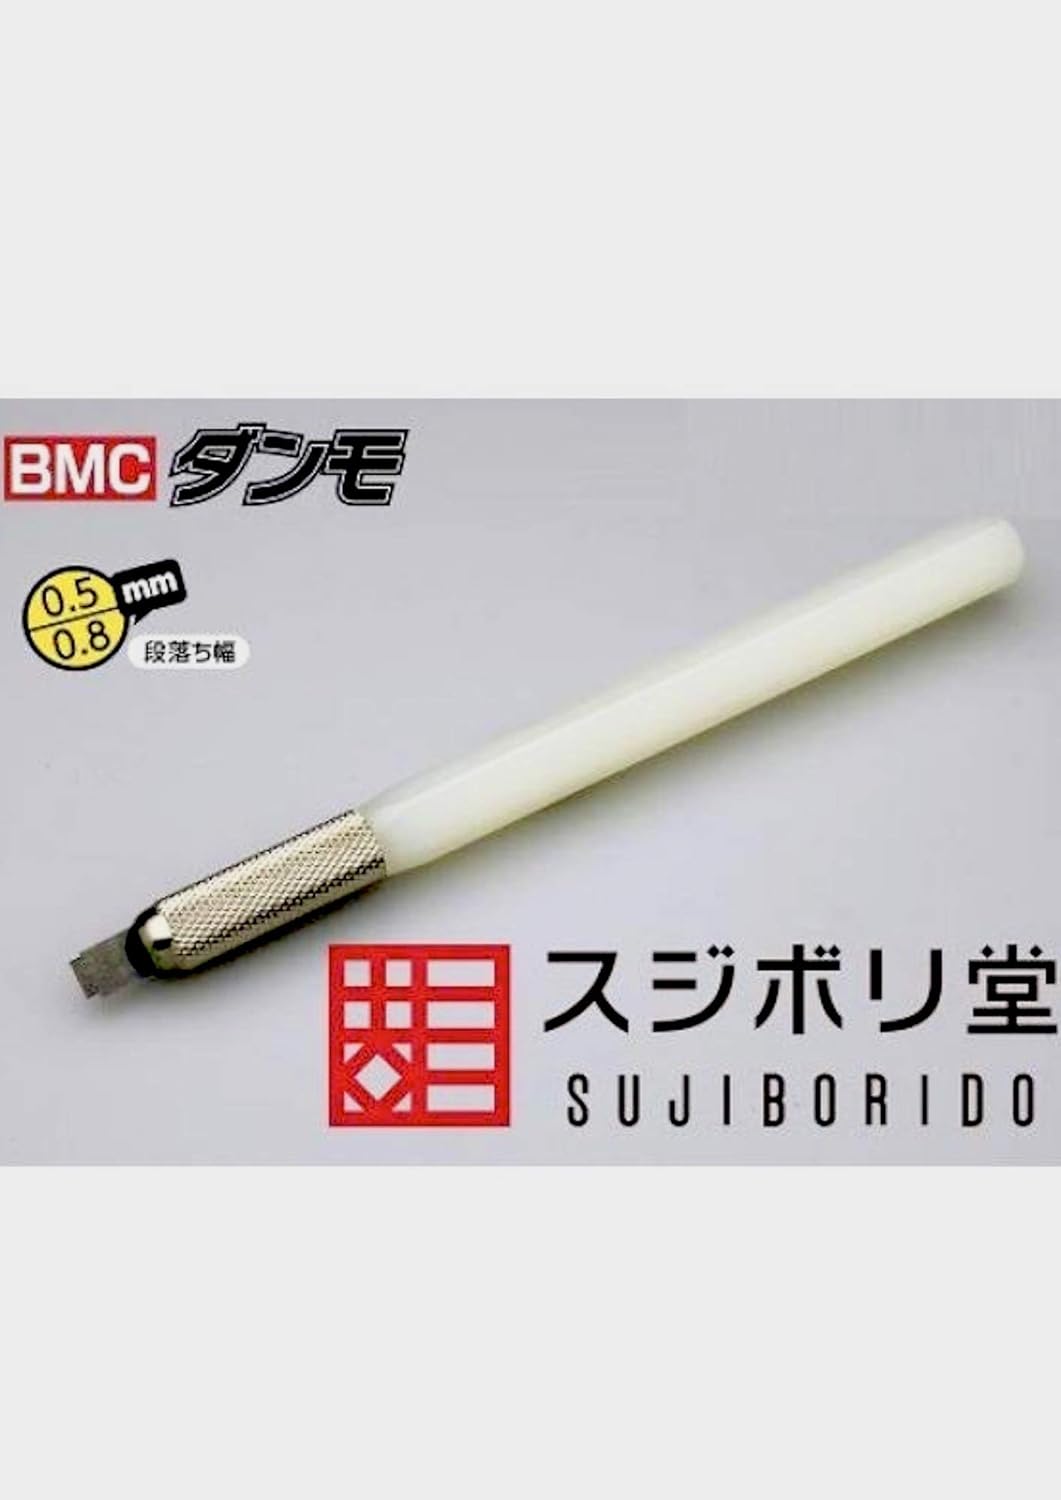 Sujiborido dan010 BMC Danmo 0.5 / 0.8 BMD010 - BanzaiHobby